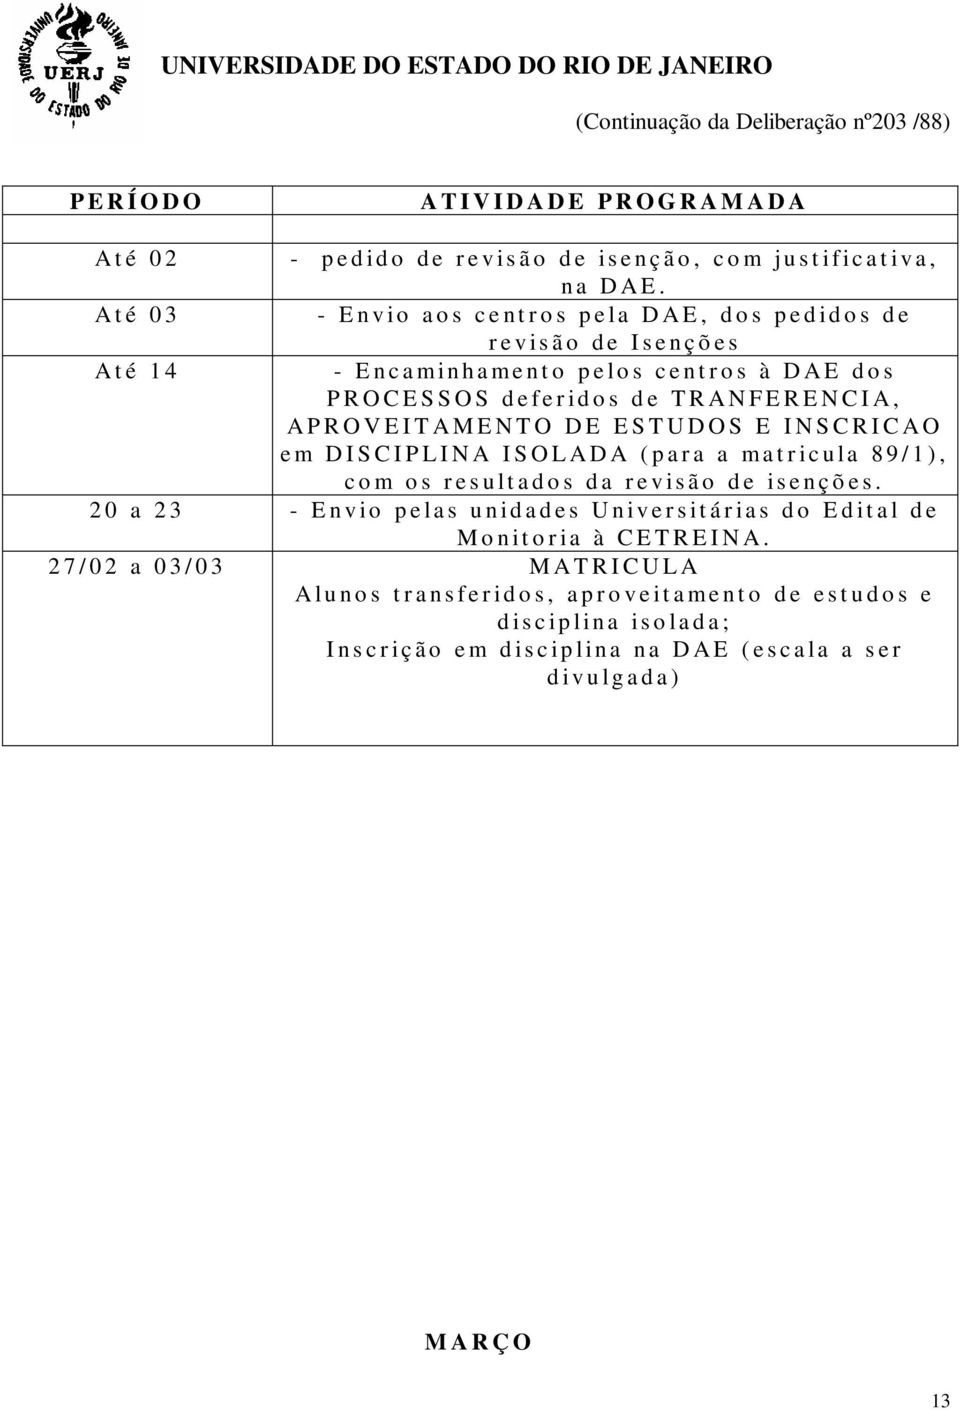 TRANFERENCIA, APROVEITAMENTO DE ESTUDOS E INSCRICAO e m DISCIPLINA ISOLADA (para a matricula 89/1), com os resultados da revisão de isenções.